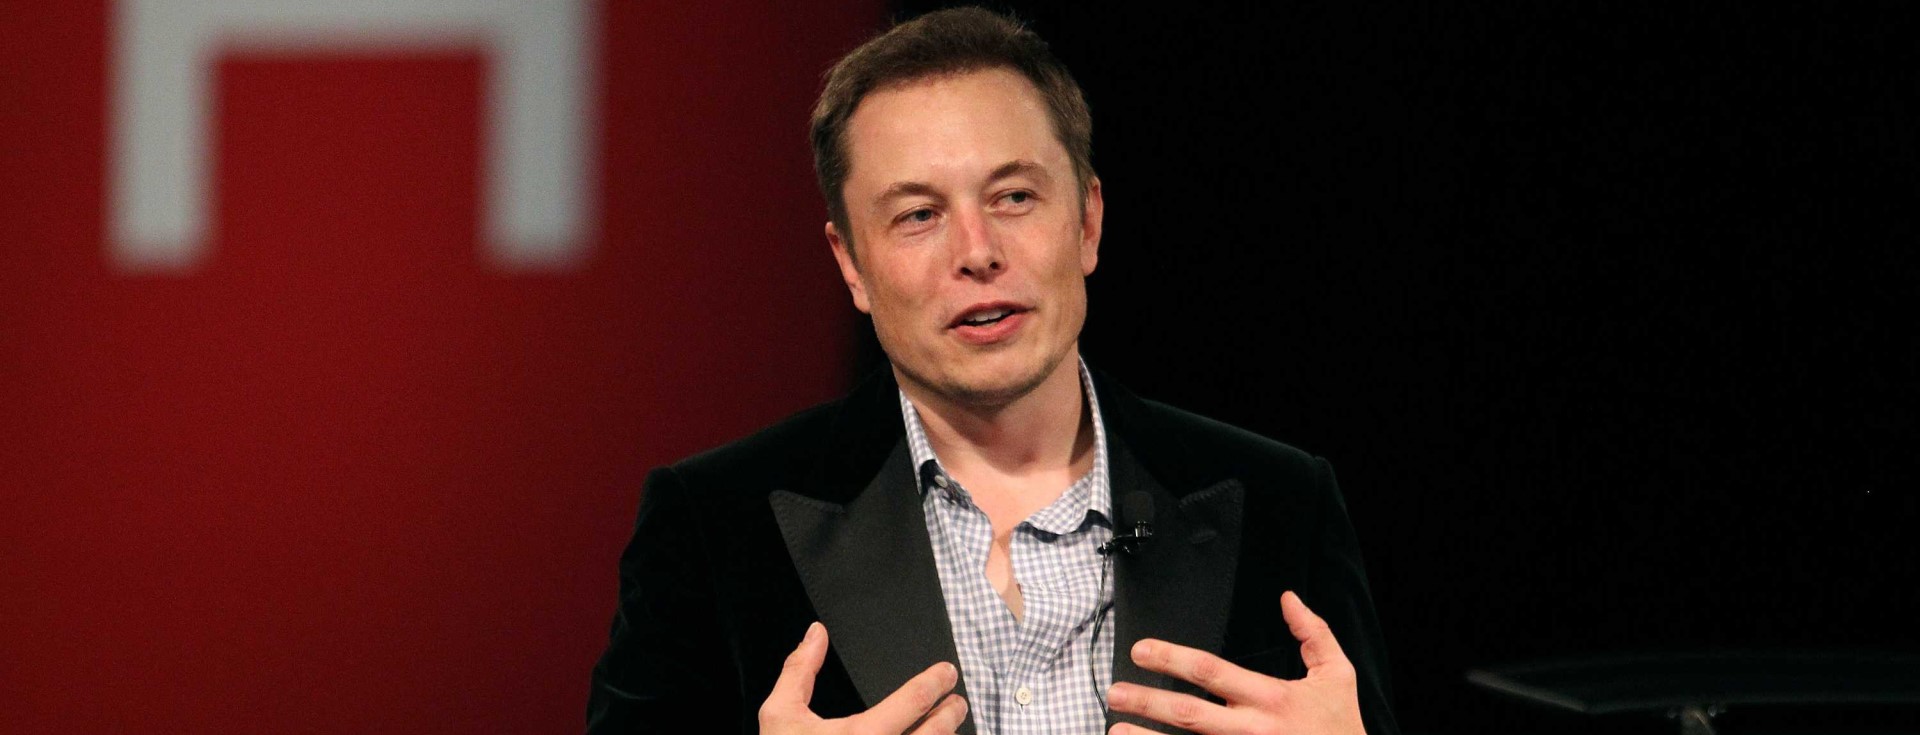 Elon Musk'a Göre Yetenekleriniz Diplomadan Daha Önemli